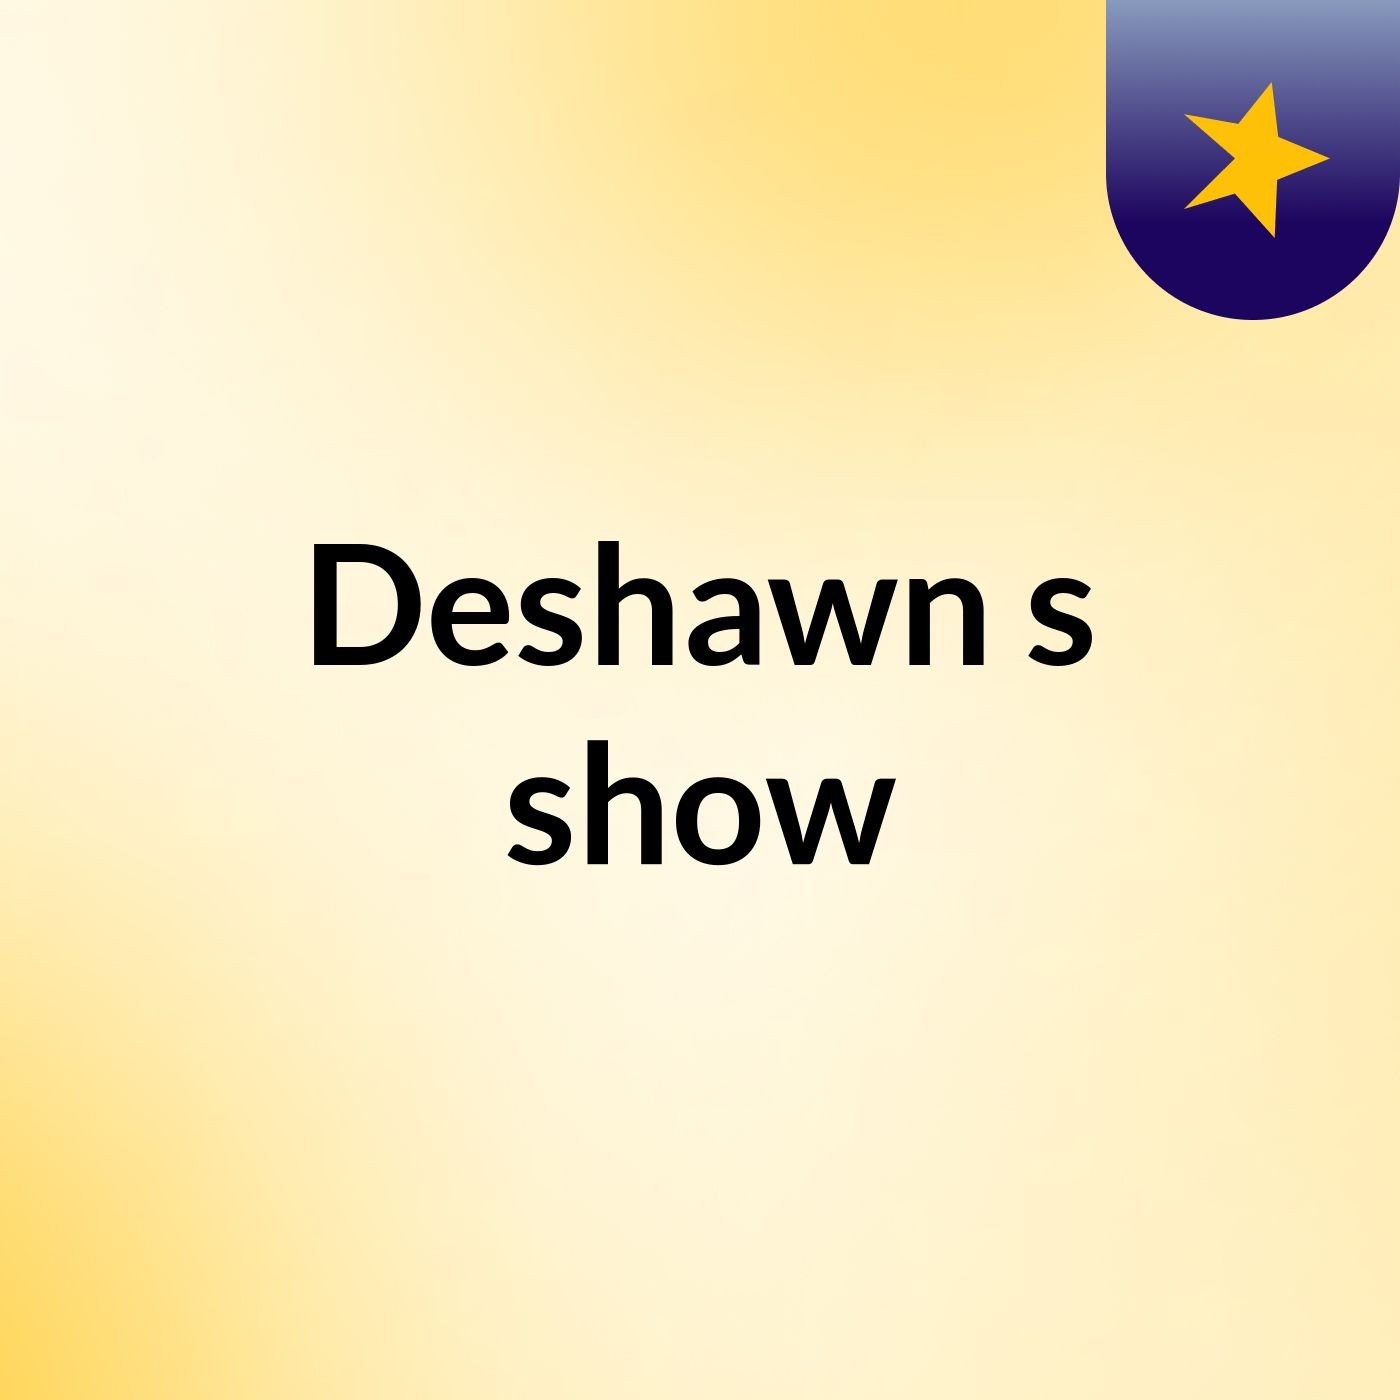 Episode 1 - Deshawn's show